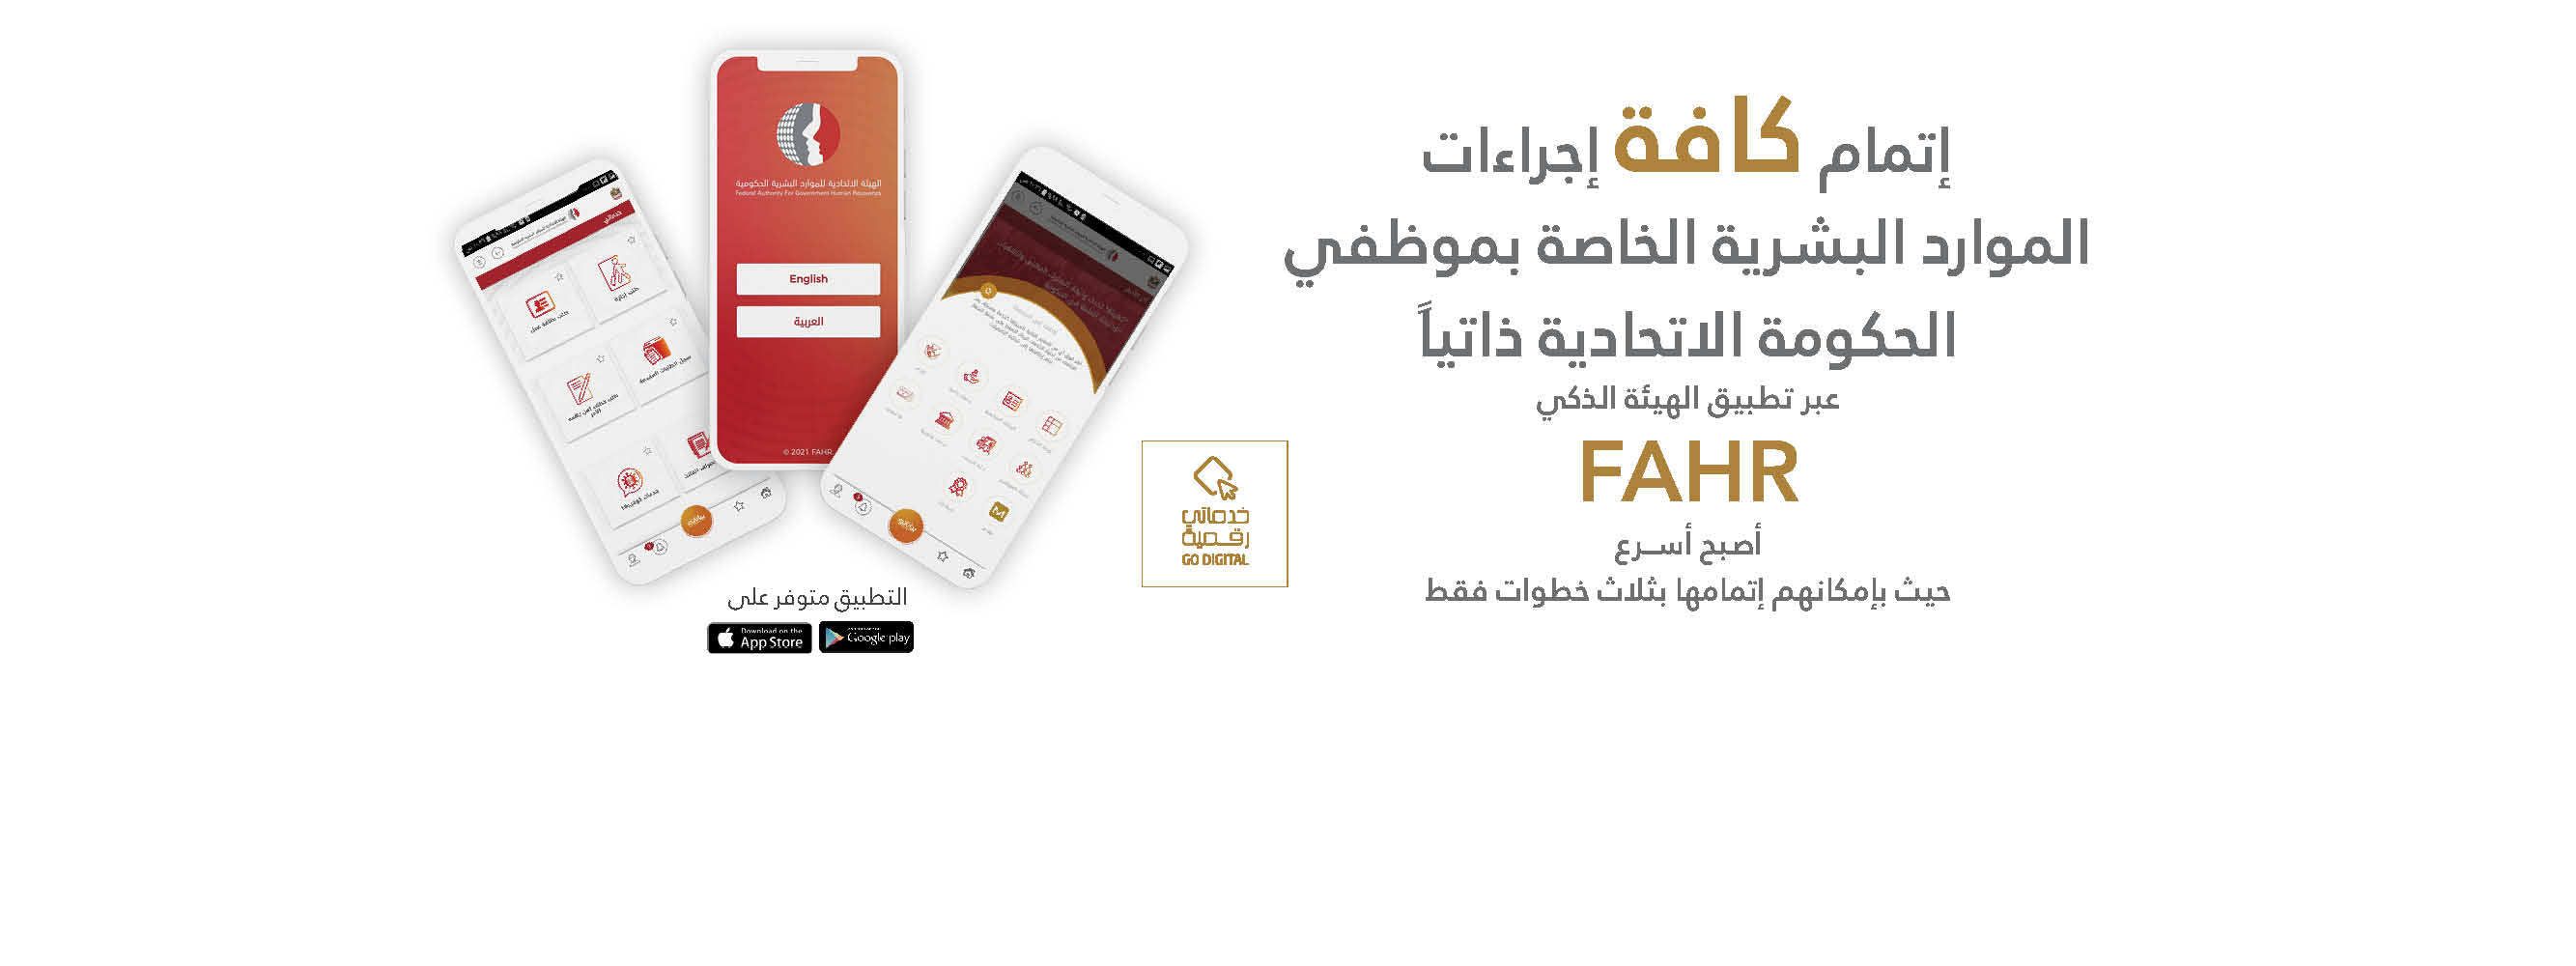 FAHR Smart App